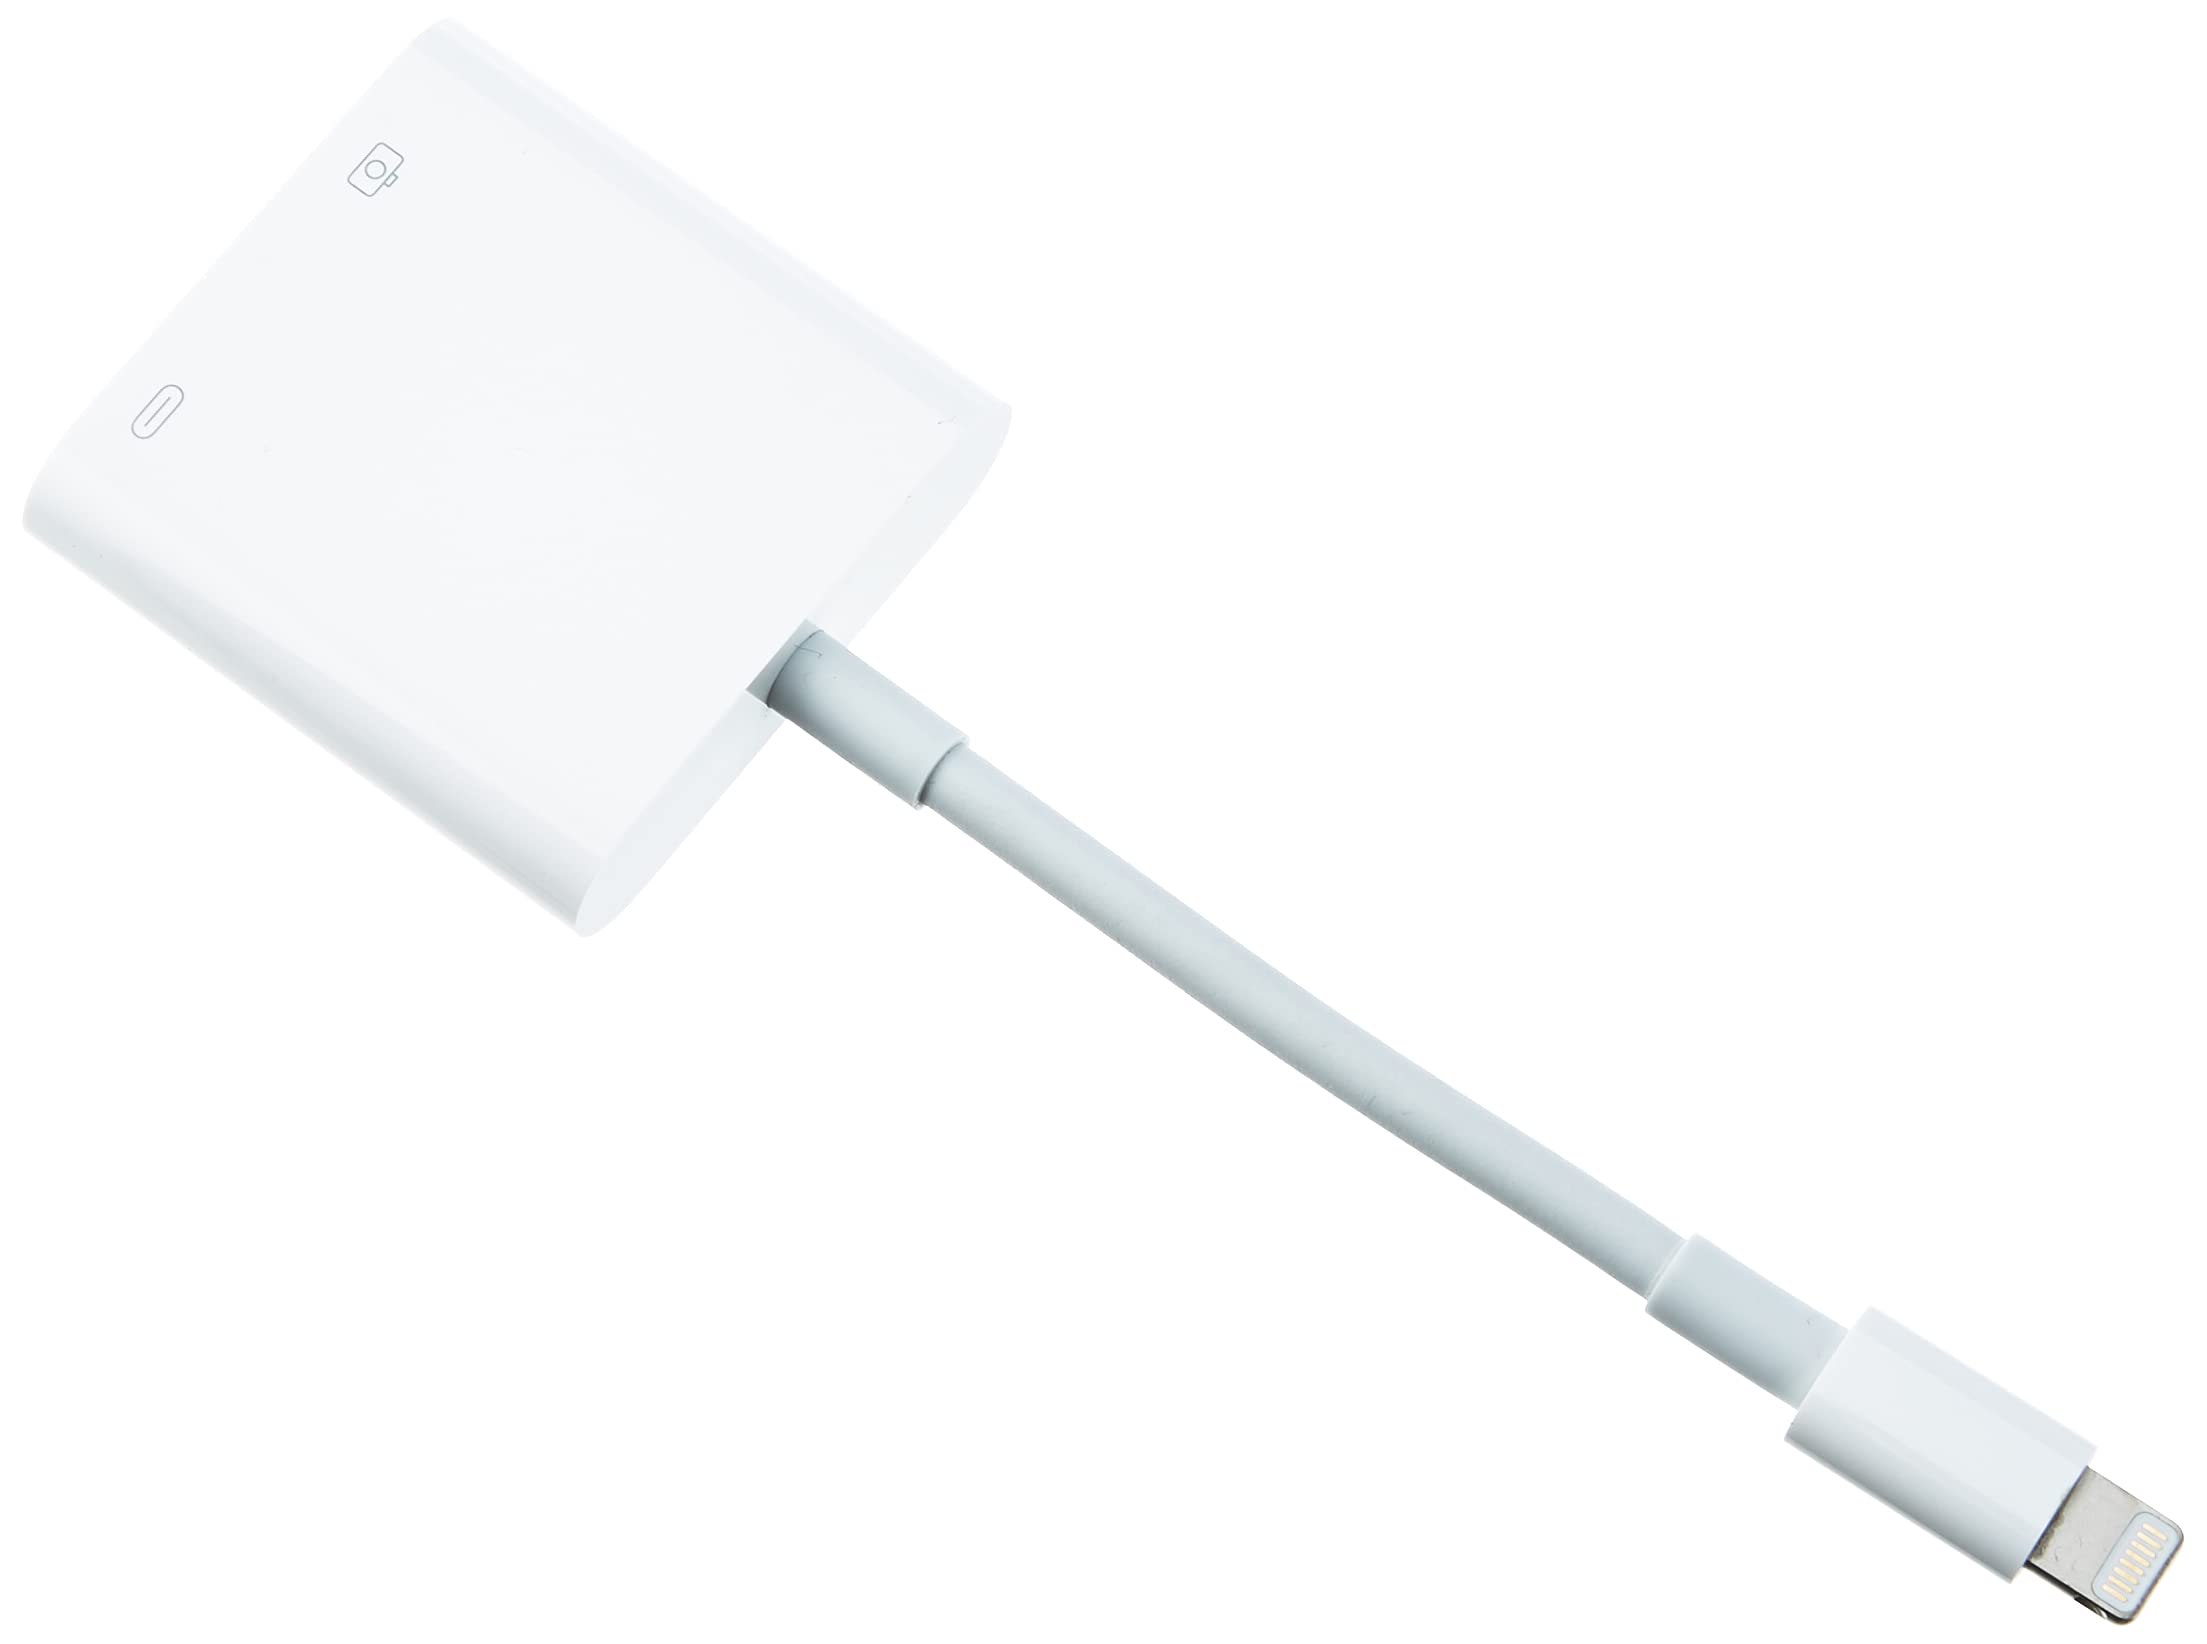 Mua Apple Lightning to USB 3 Camera Adapter trên Amazon Anh chính hãng 2023  | Giaonhan247